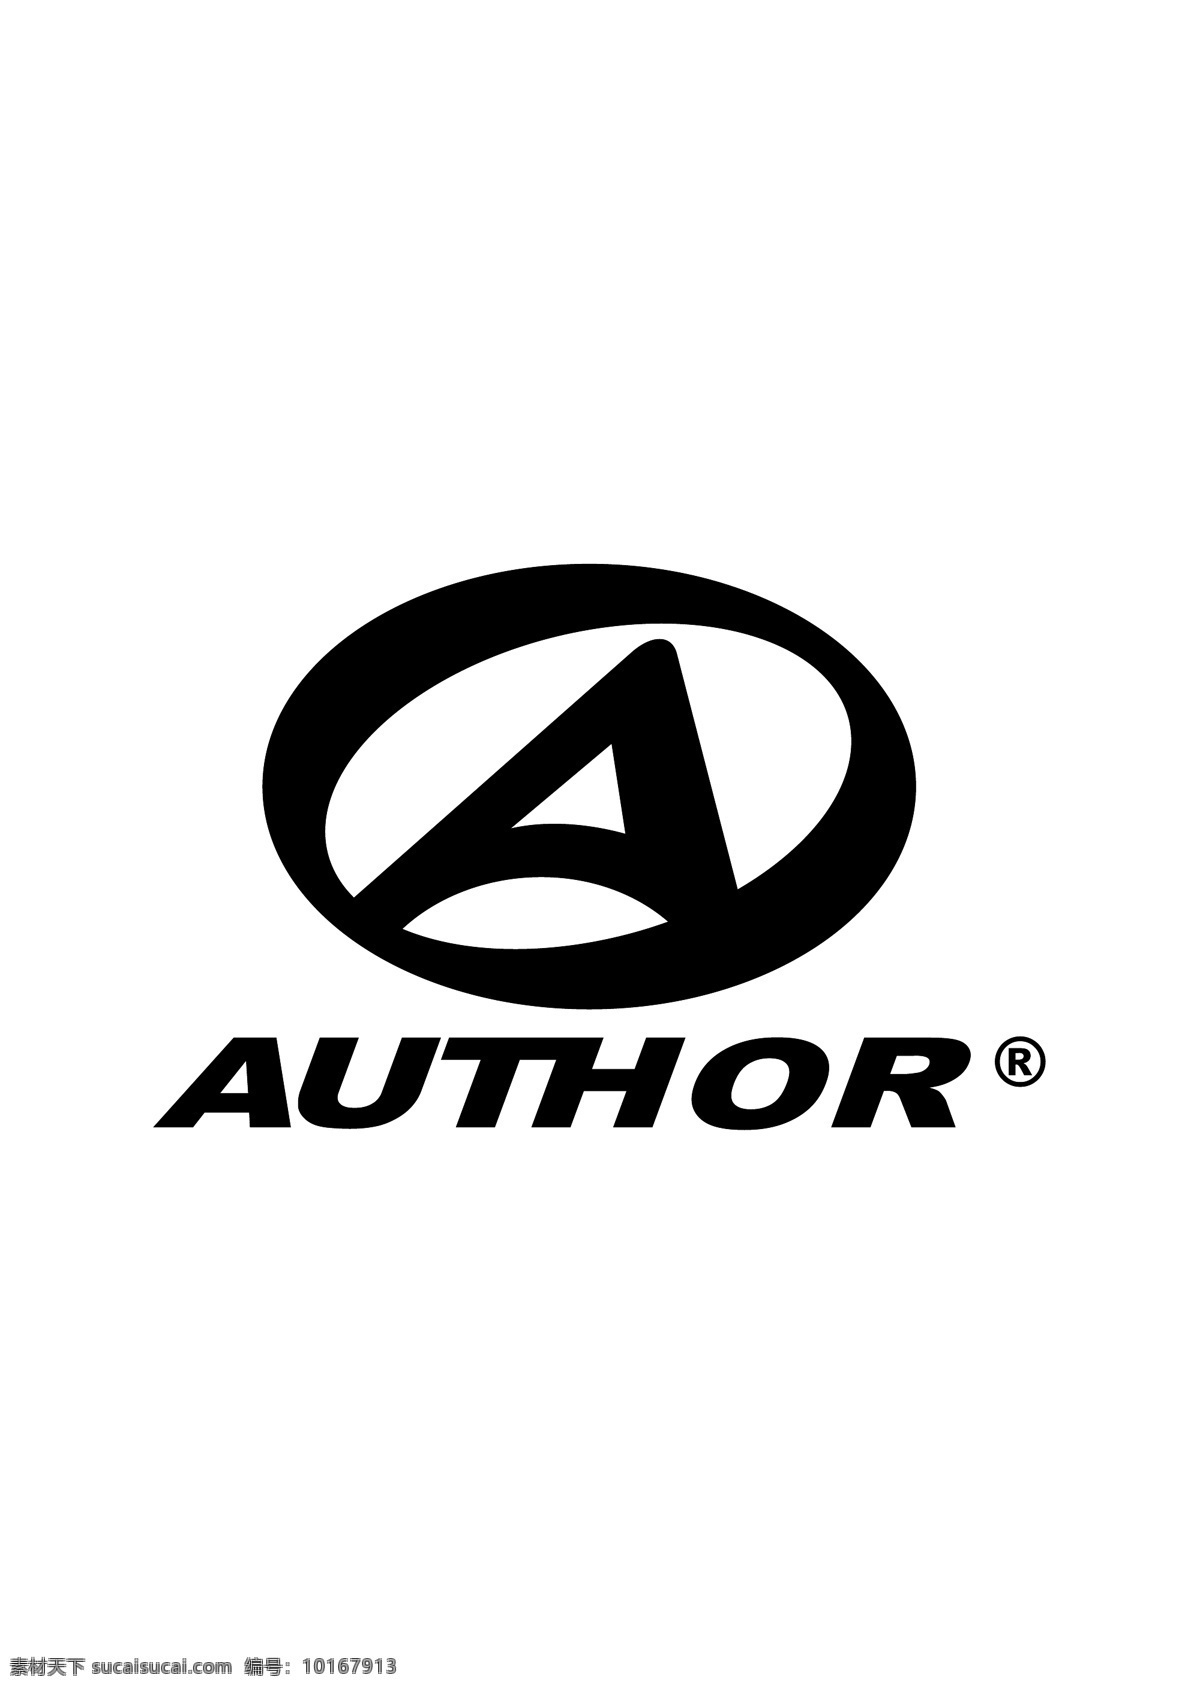 author logo大全 logo 设计欣赏 商业矢量 矢量下载 运动 标志 标志设计 欣赏 网页矢量 矢量图 其他矢量图